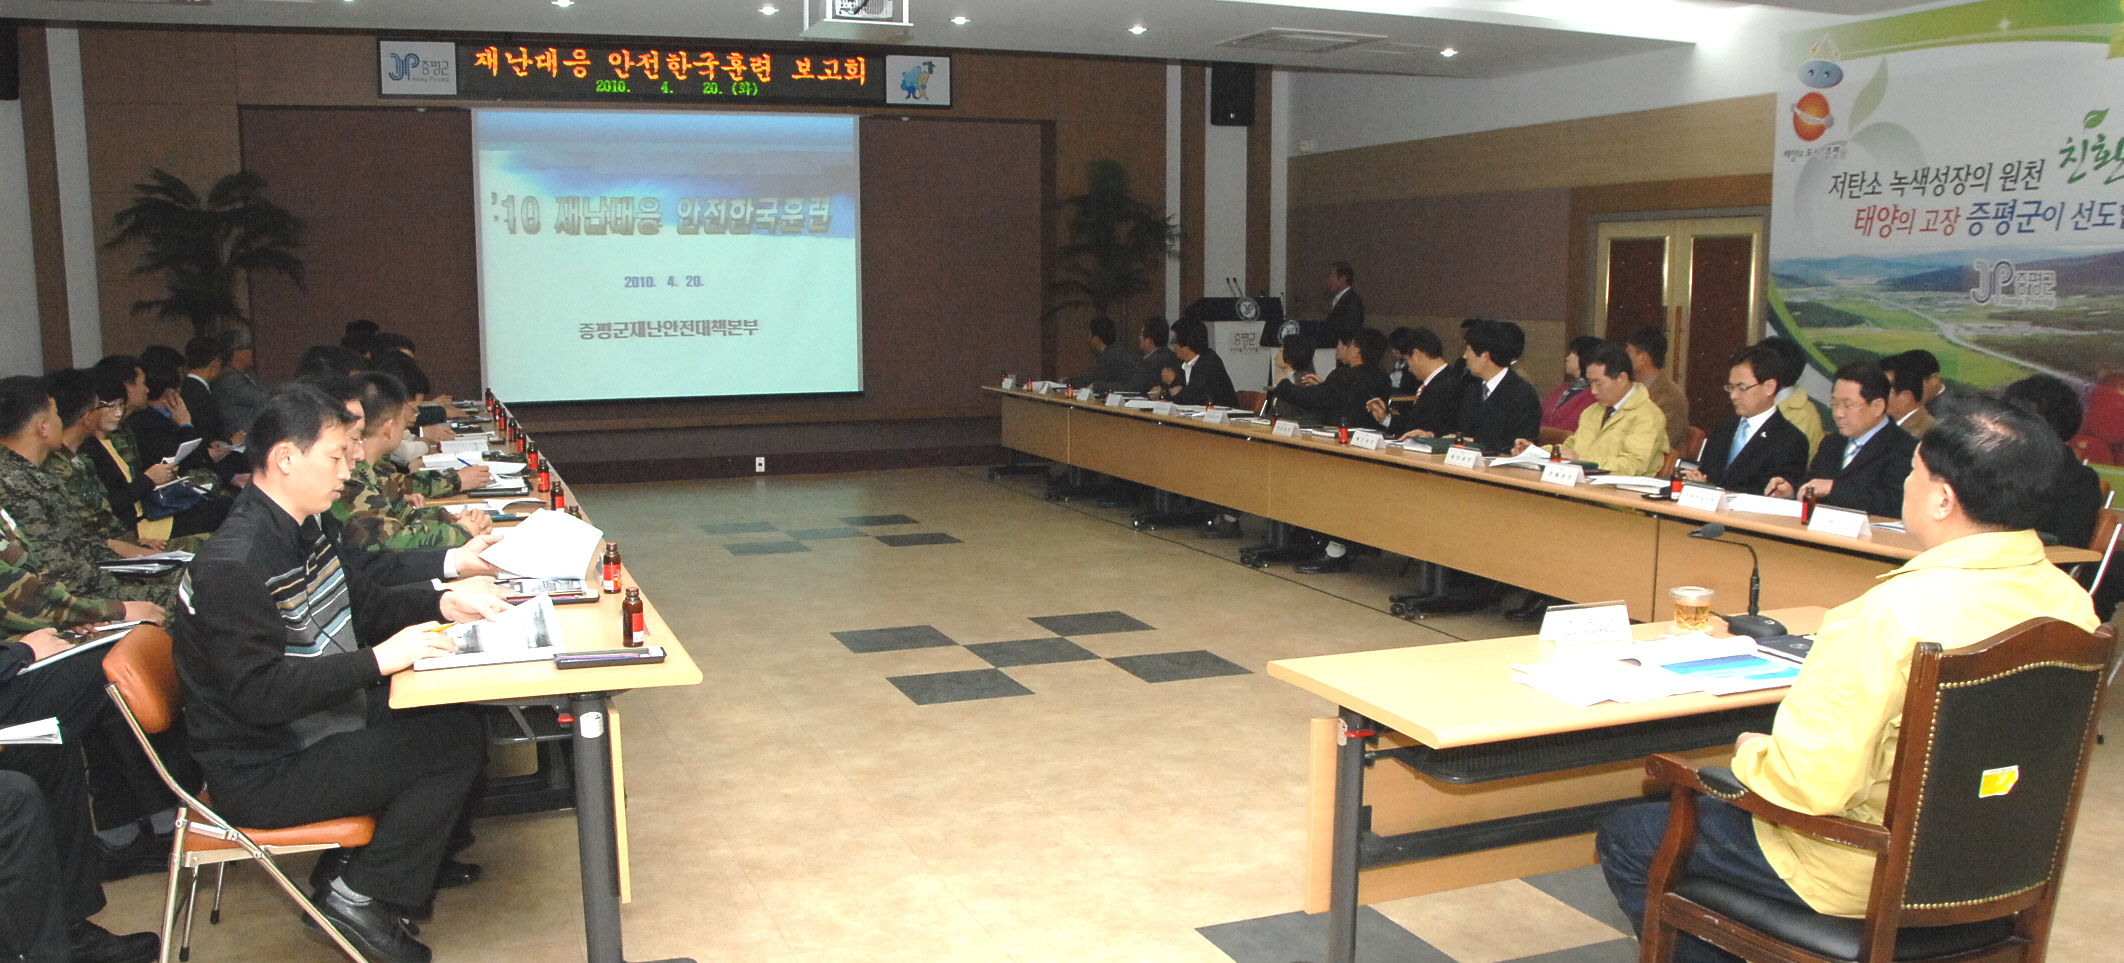 2010 재난대응안전한국훈련 준비보고회 개최